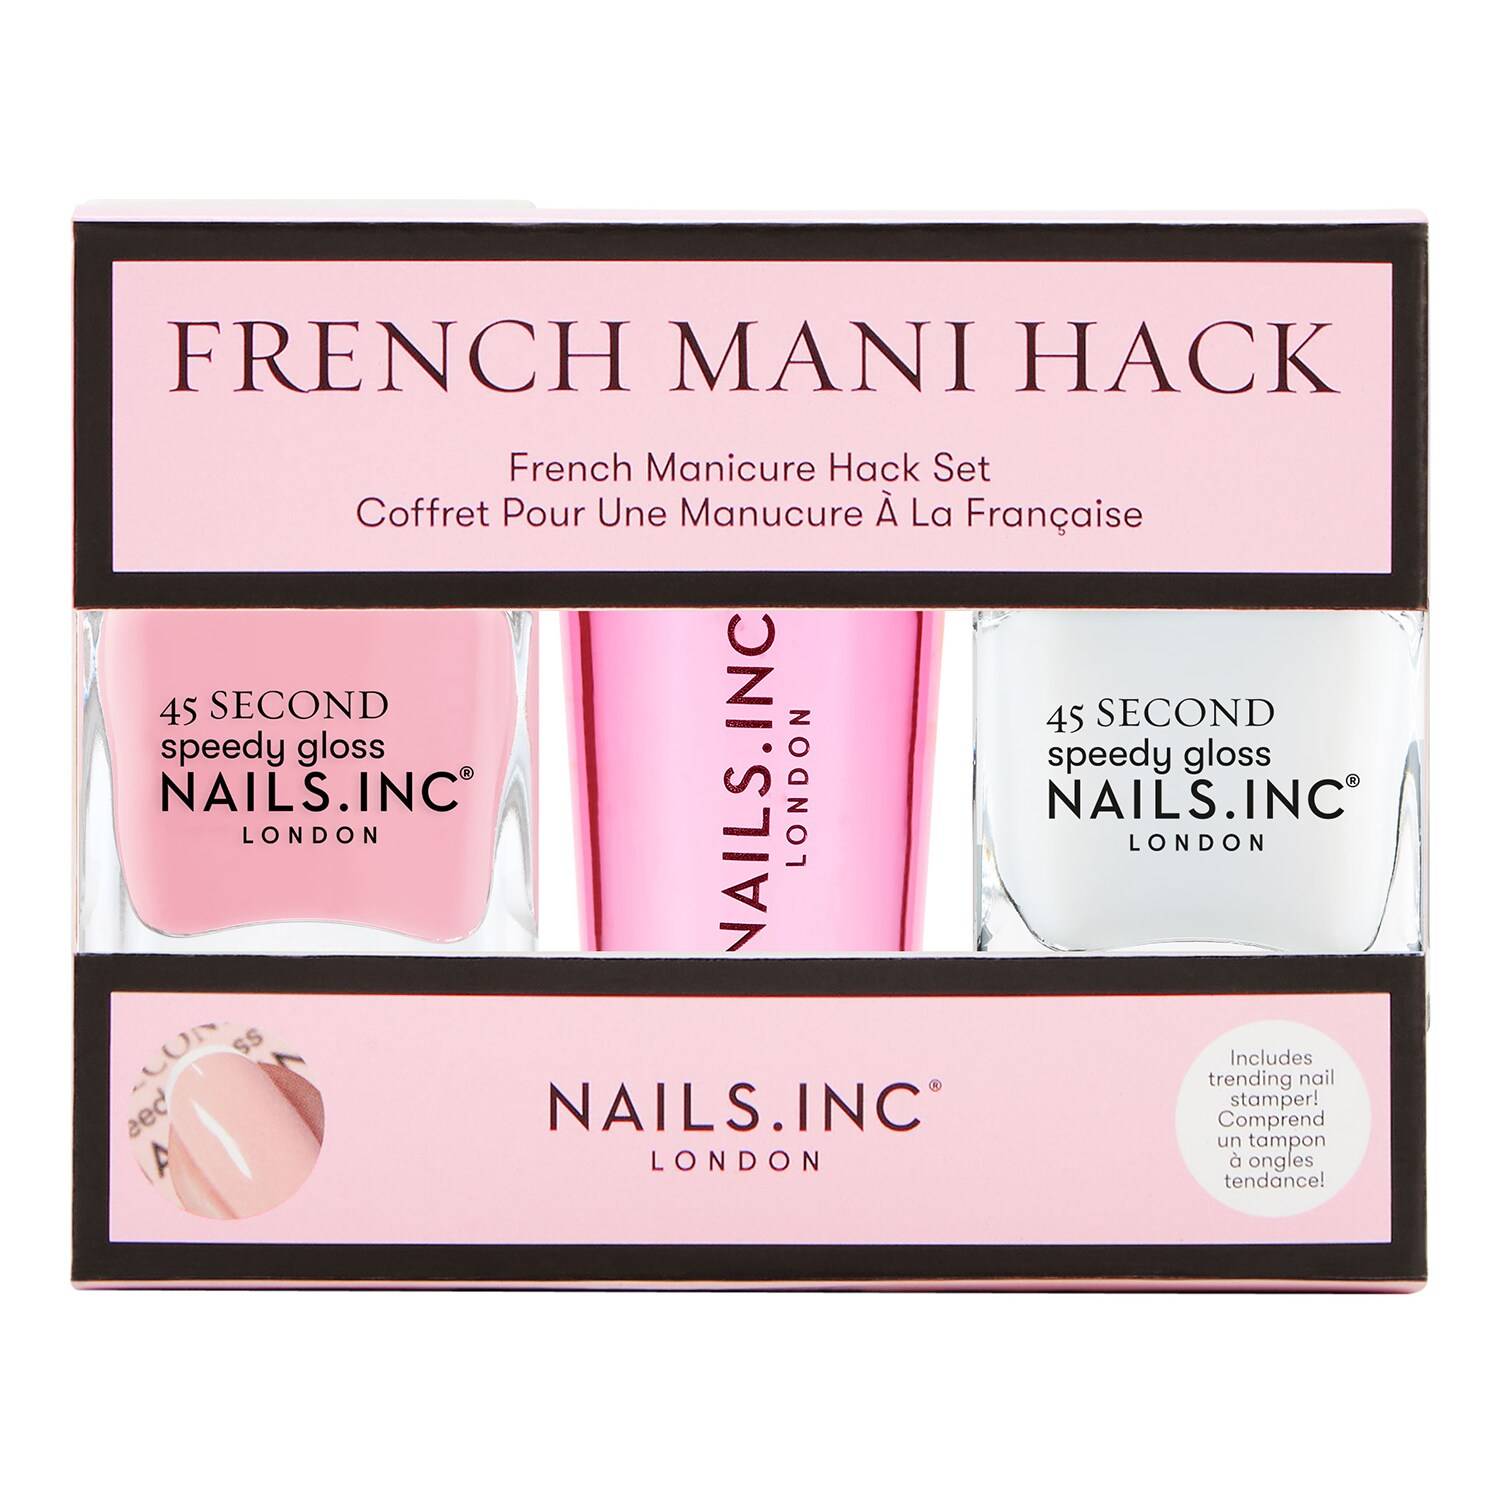 Nails.Inc French Mani Hack Nail Polish Duo